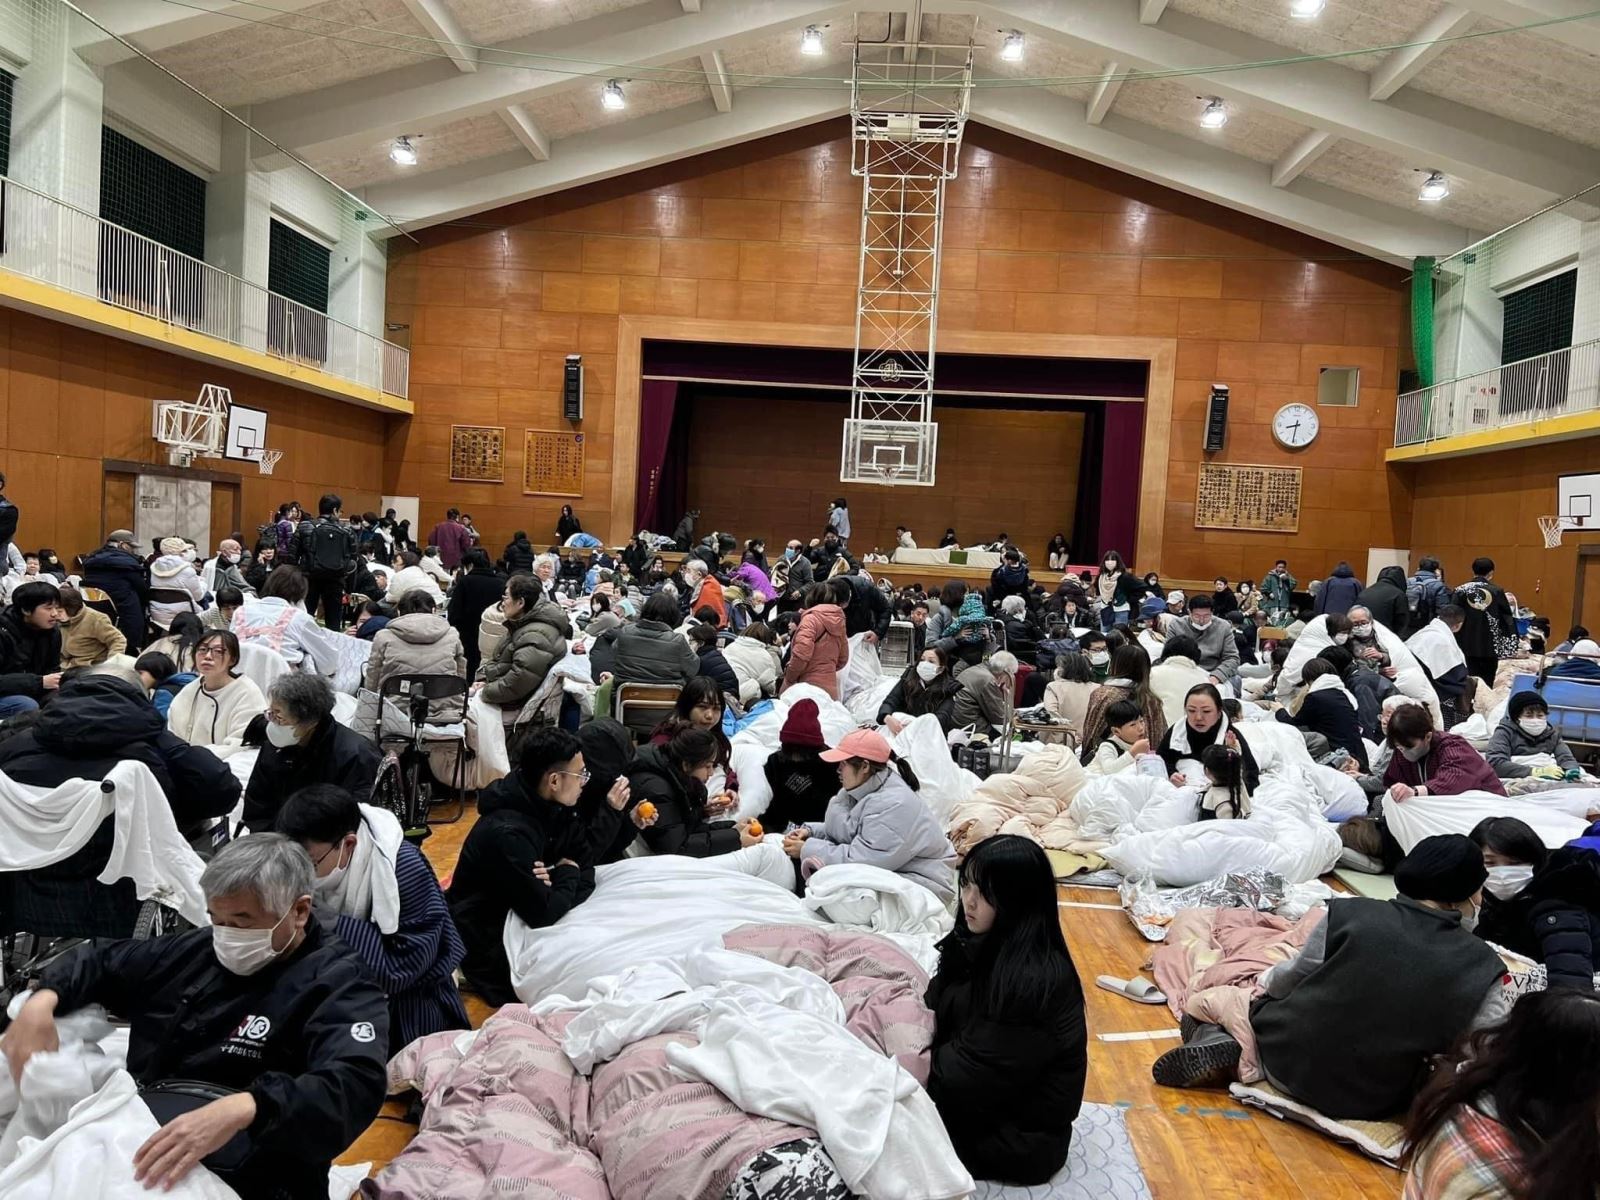 Động đất mạnh gieo nỗi buồn ngày đầu năm ở Nhật Bản - ảnh 4